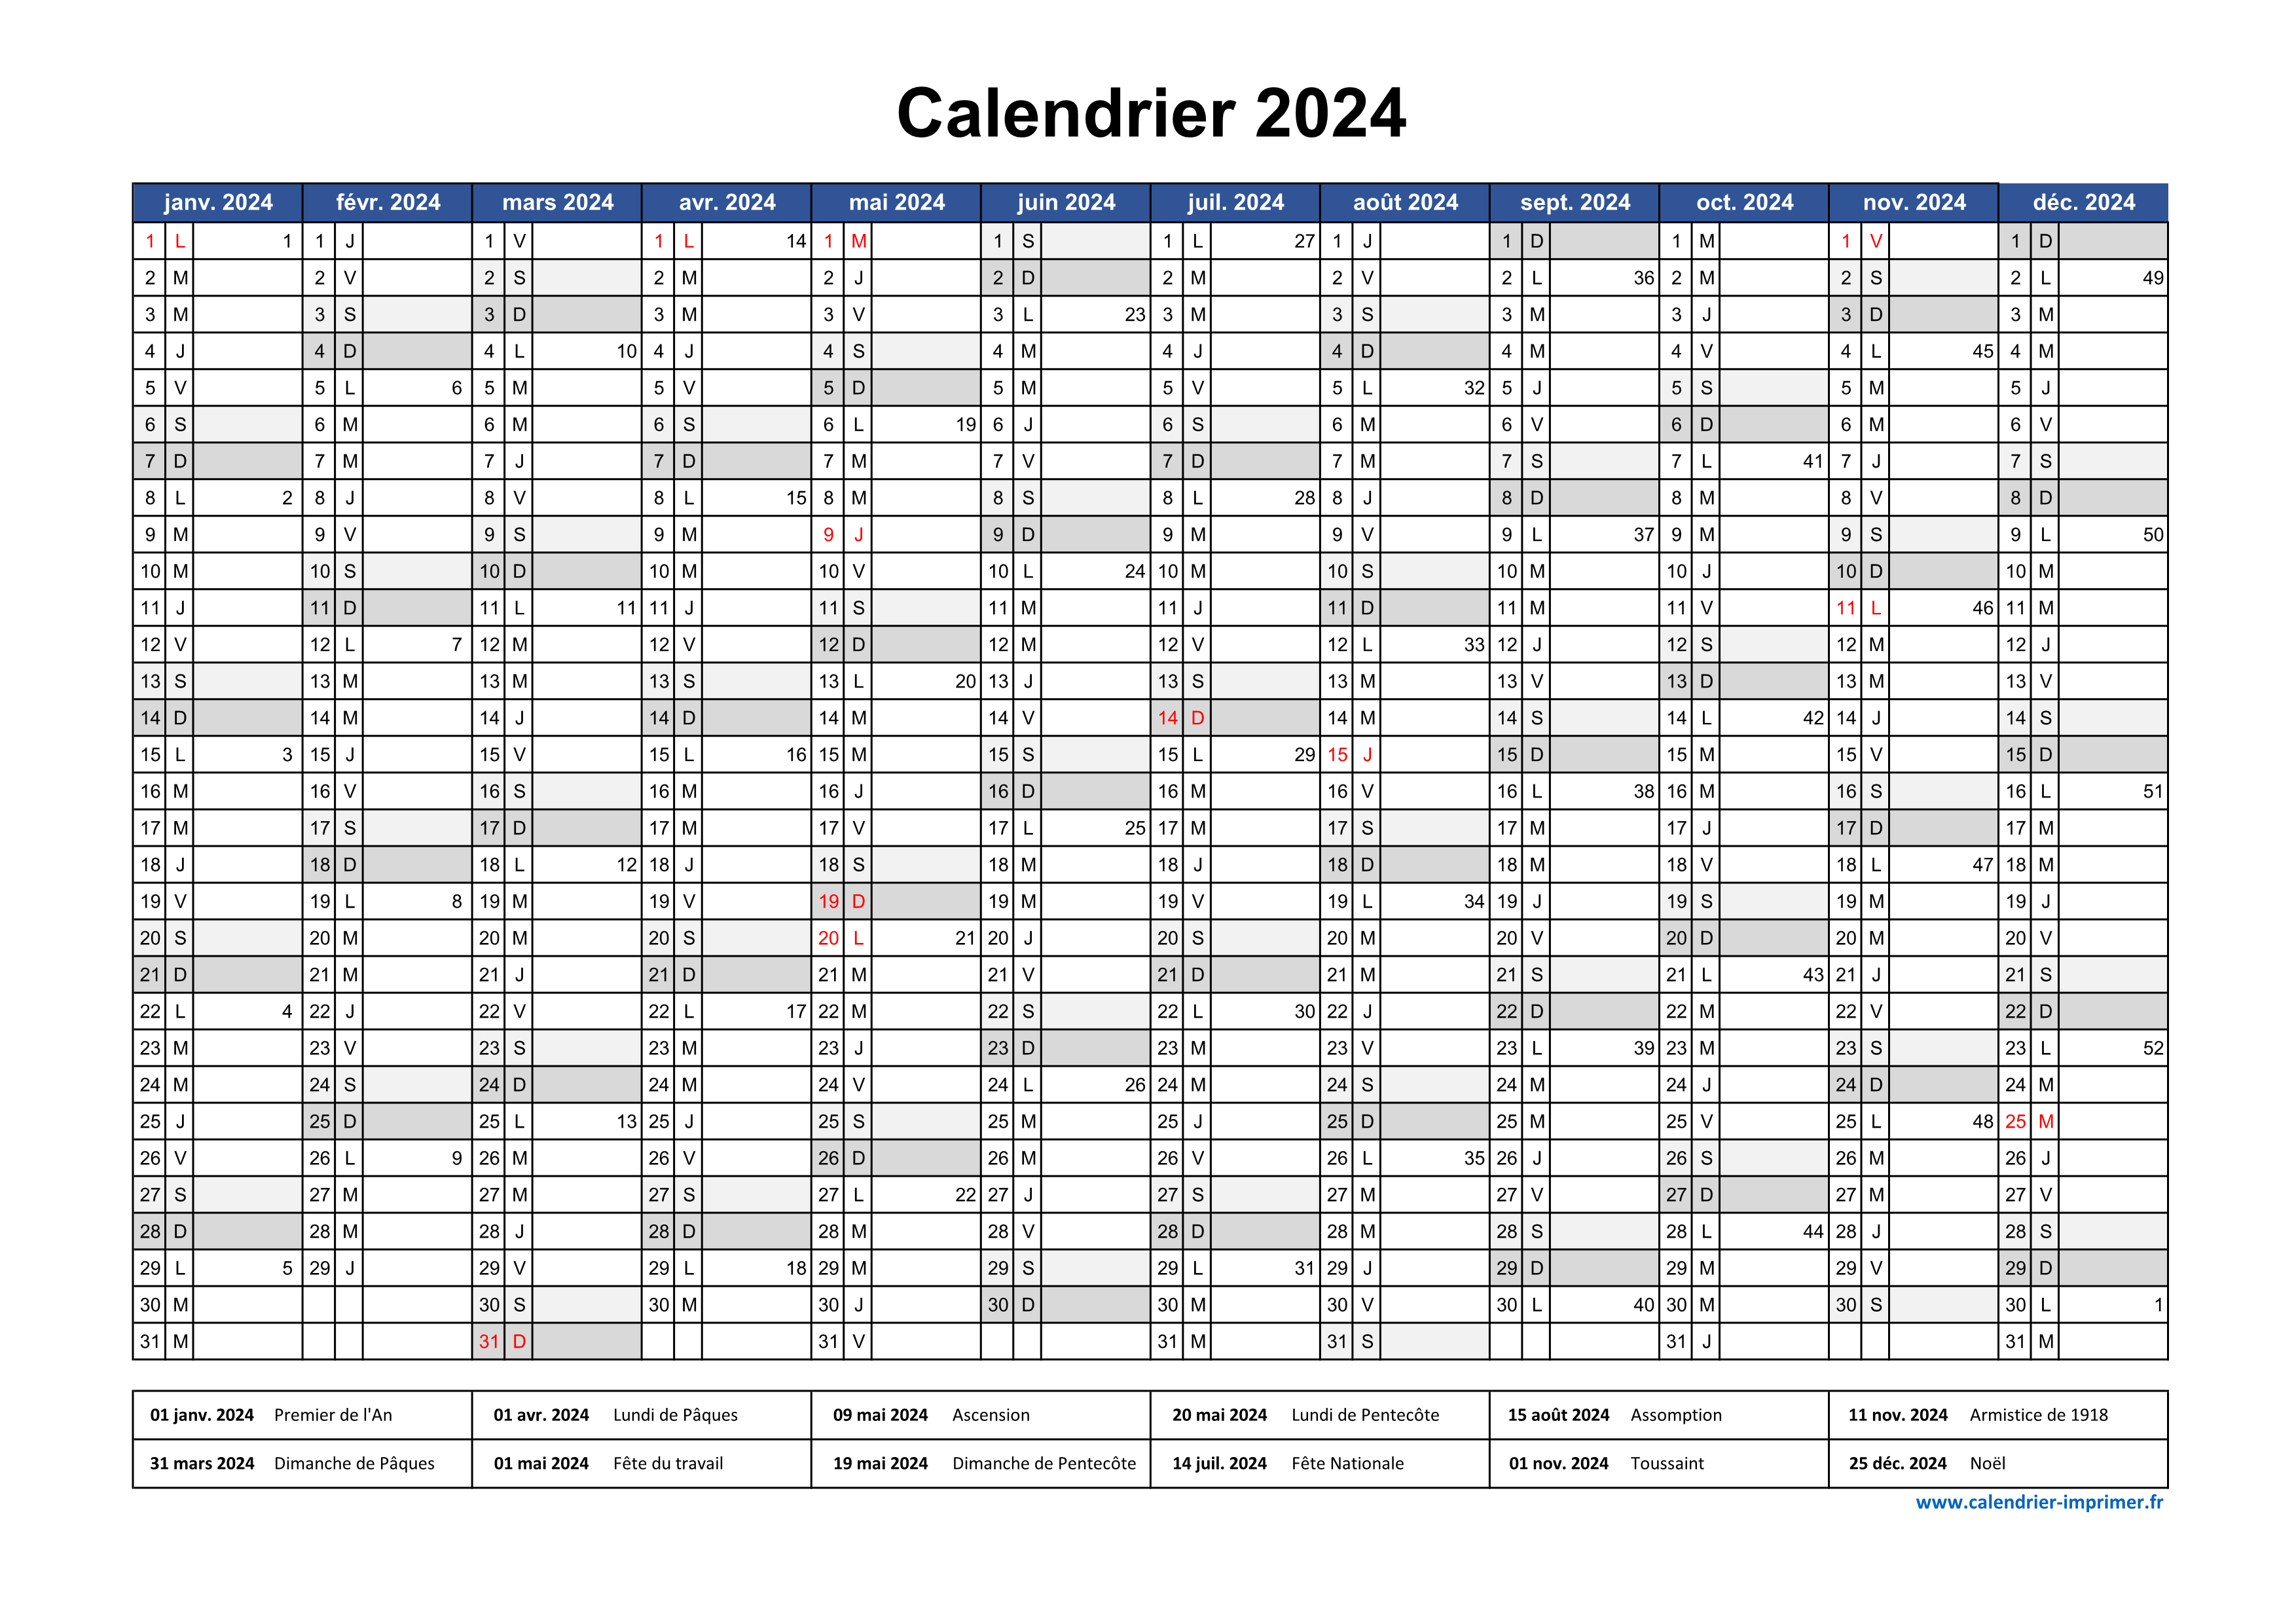 Calendrier Mai 2024 à consulter ou imprimer 